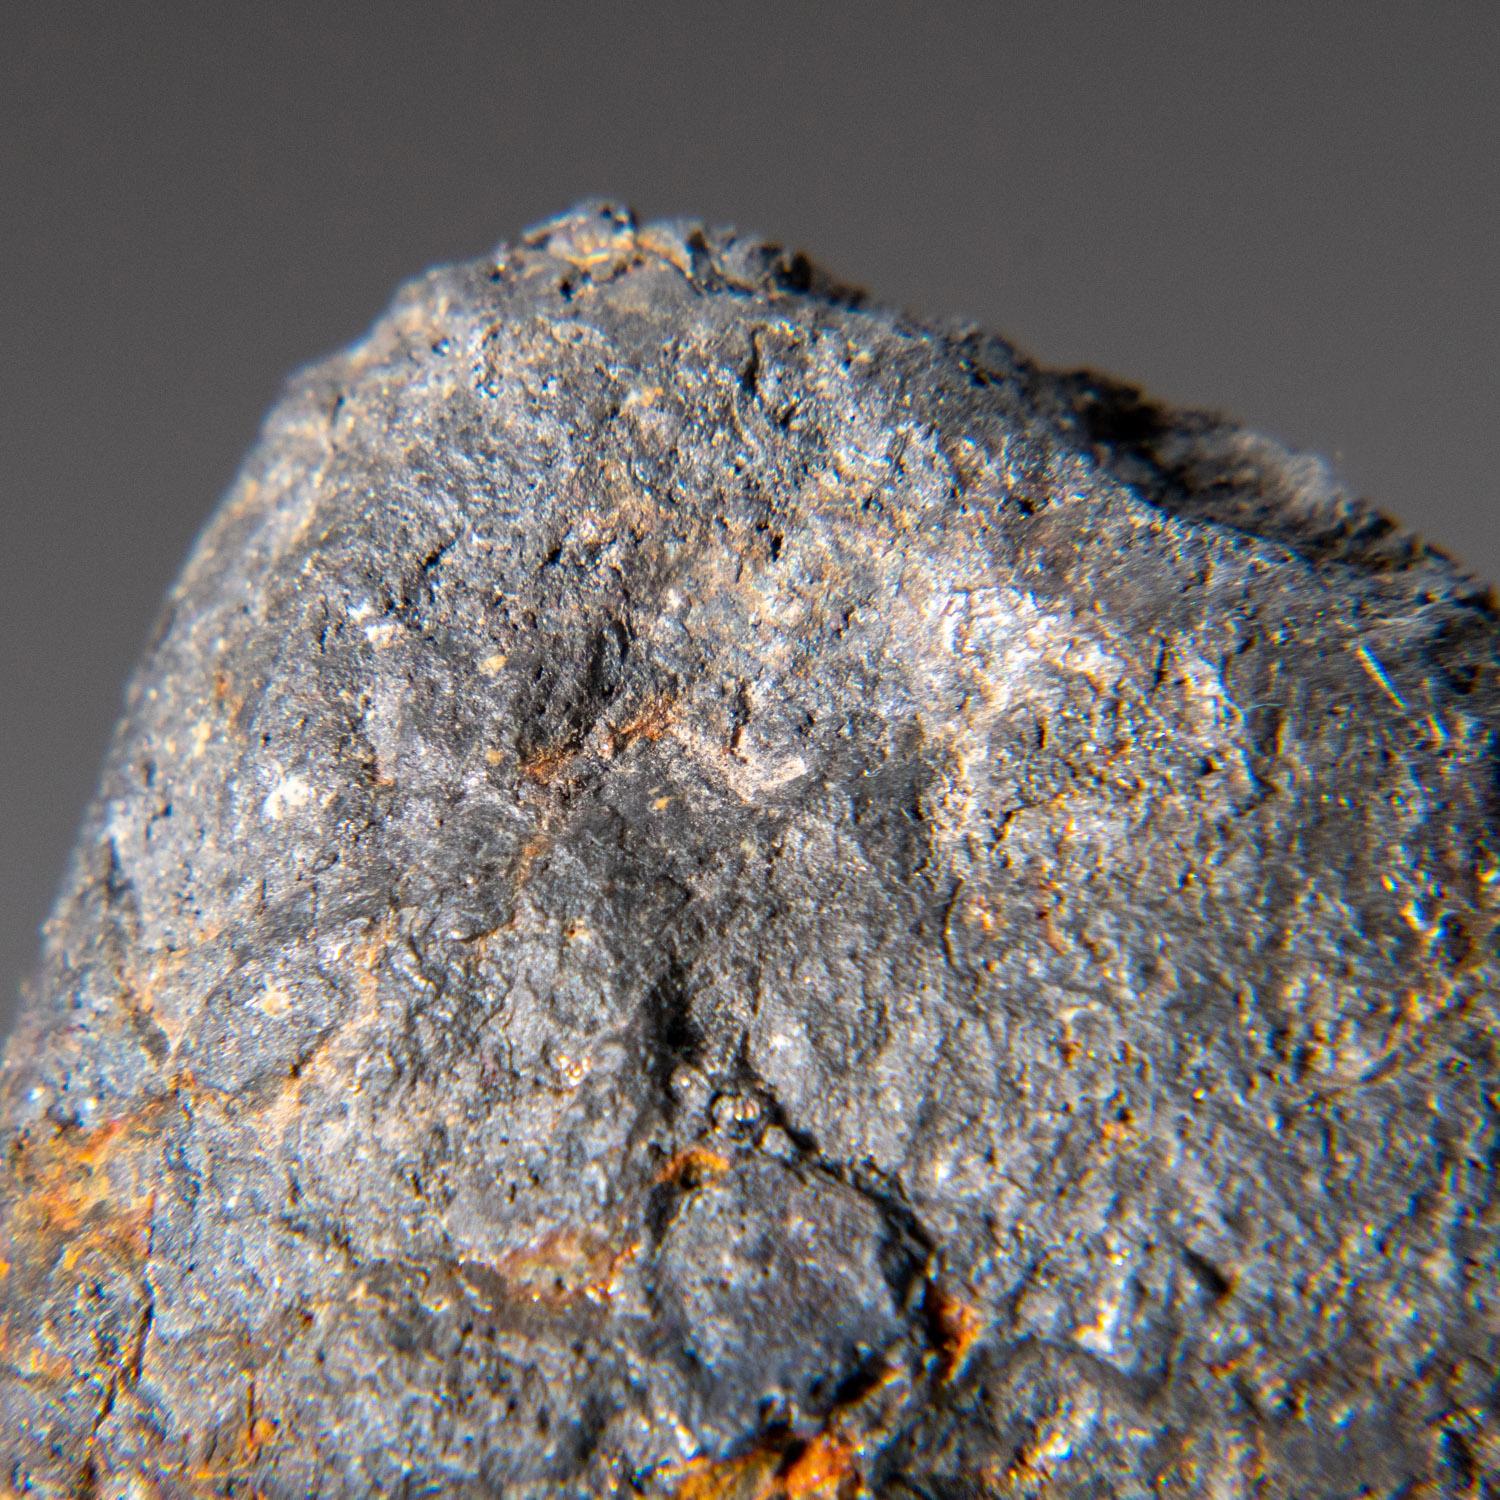 Véritable météorite en fer de Canyon Diablo dans une boîte d'exposition. Cette météorite de nickel-fer a été trouvée dans le célèbre cratère de Baringer (meteor crater), dans l'État d'Arizona, aux États-Unis. Le cratère a un diamètre d'environ 3 900